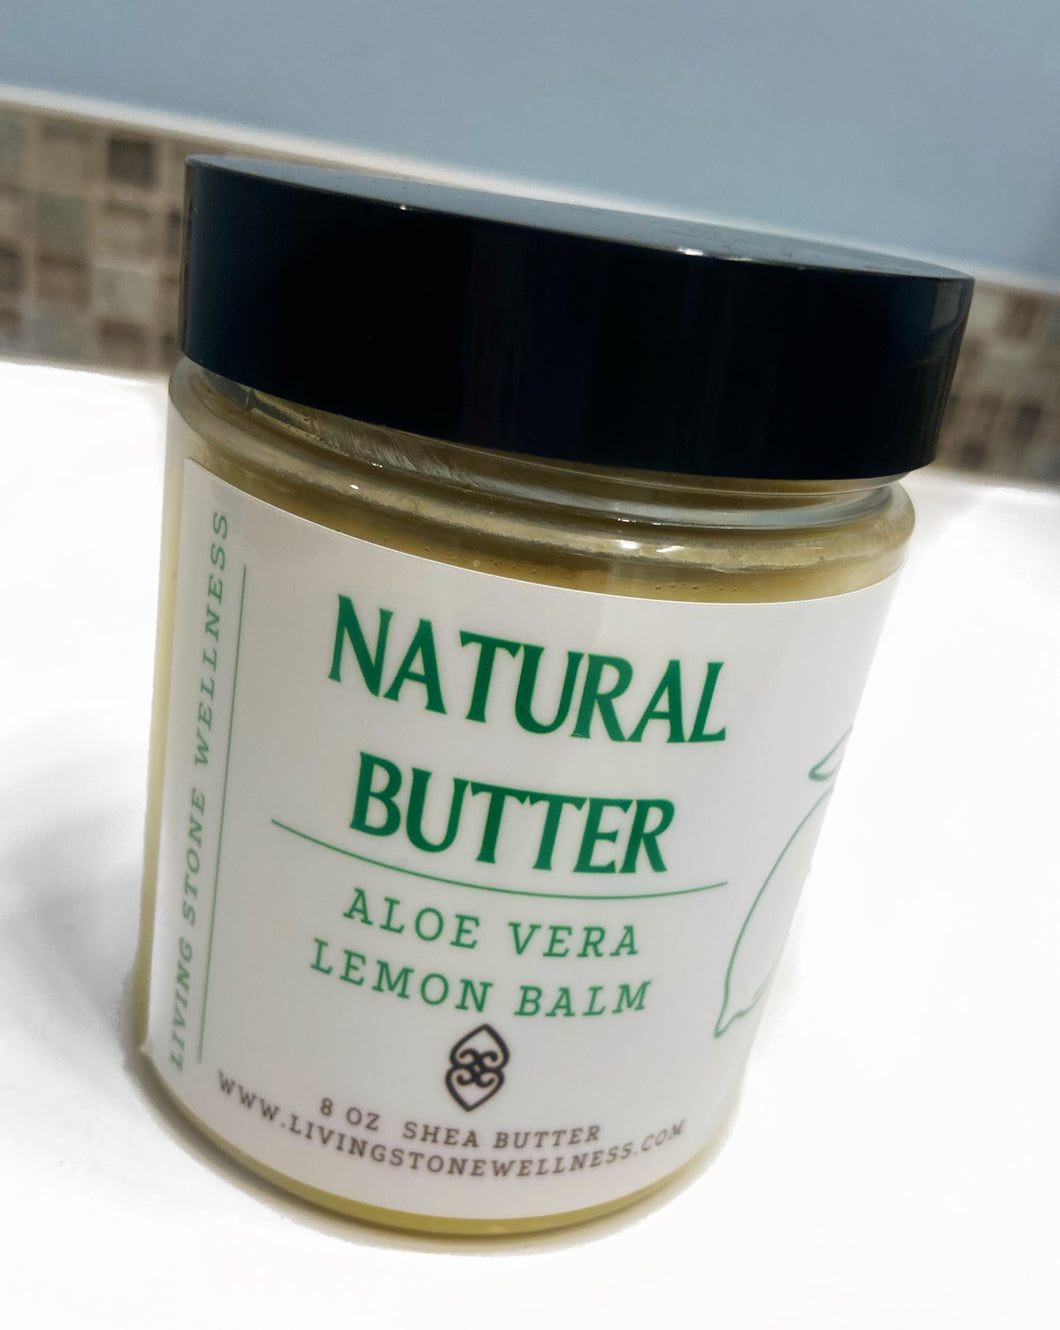 Natural Butter